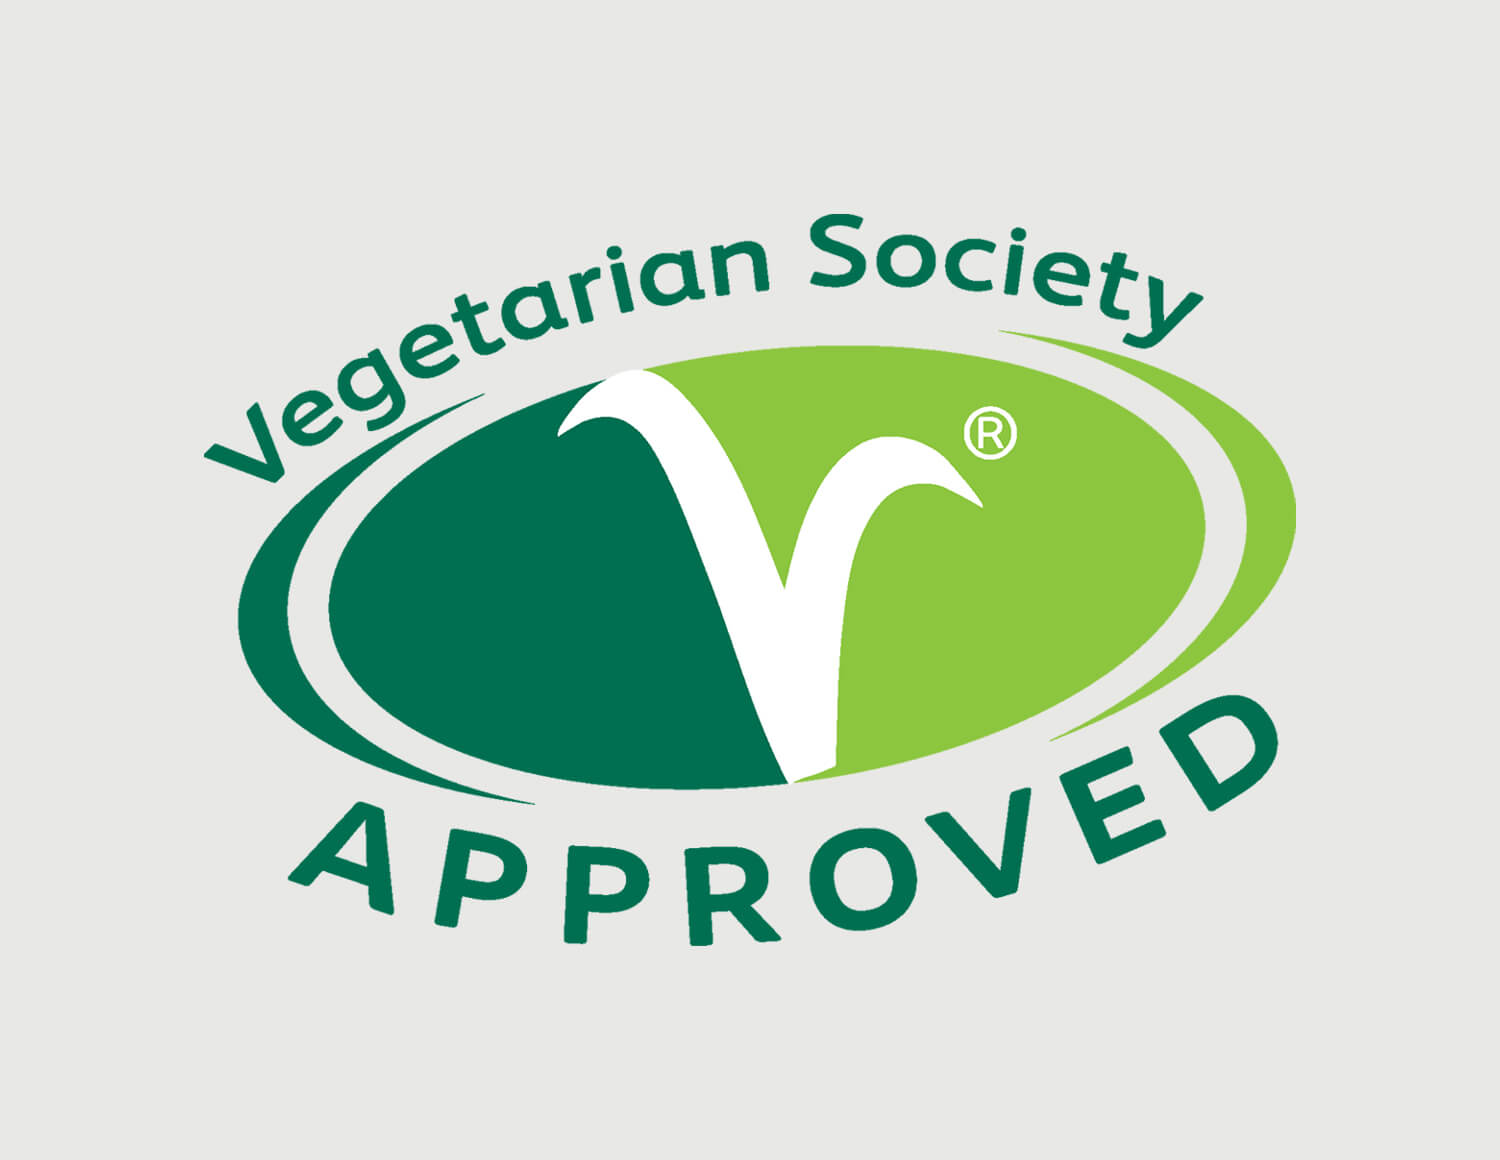 Vegetarian Society - Vegetarian - Vegetarian Society - Vegetarian